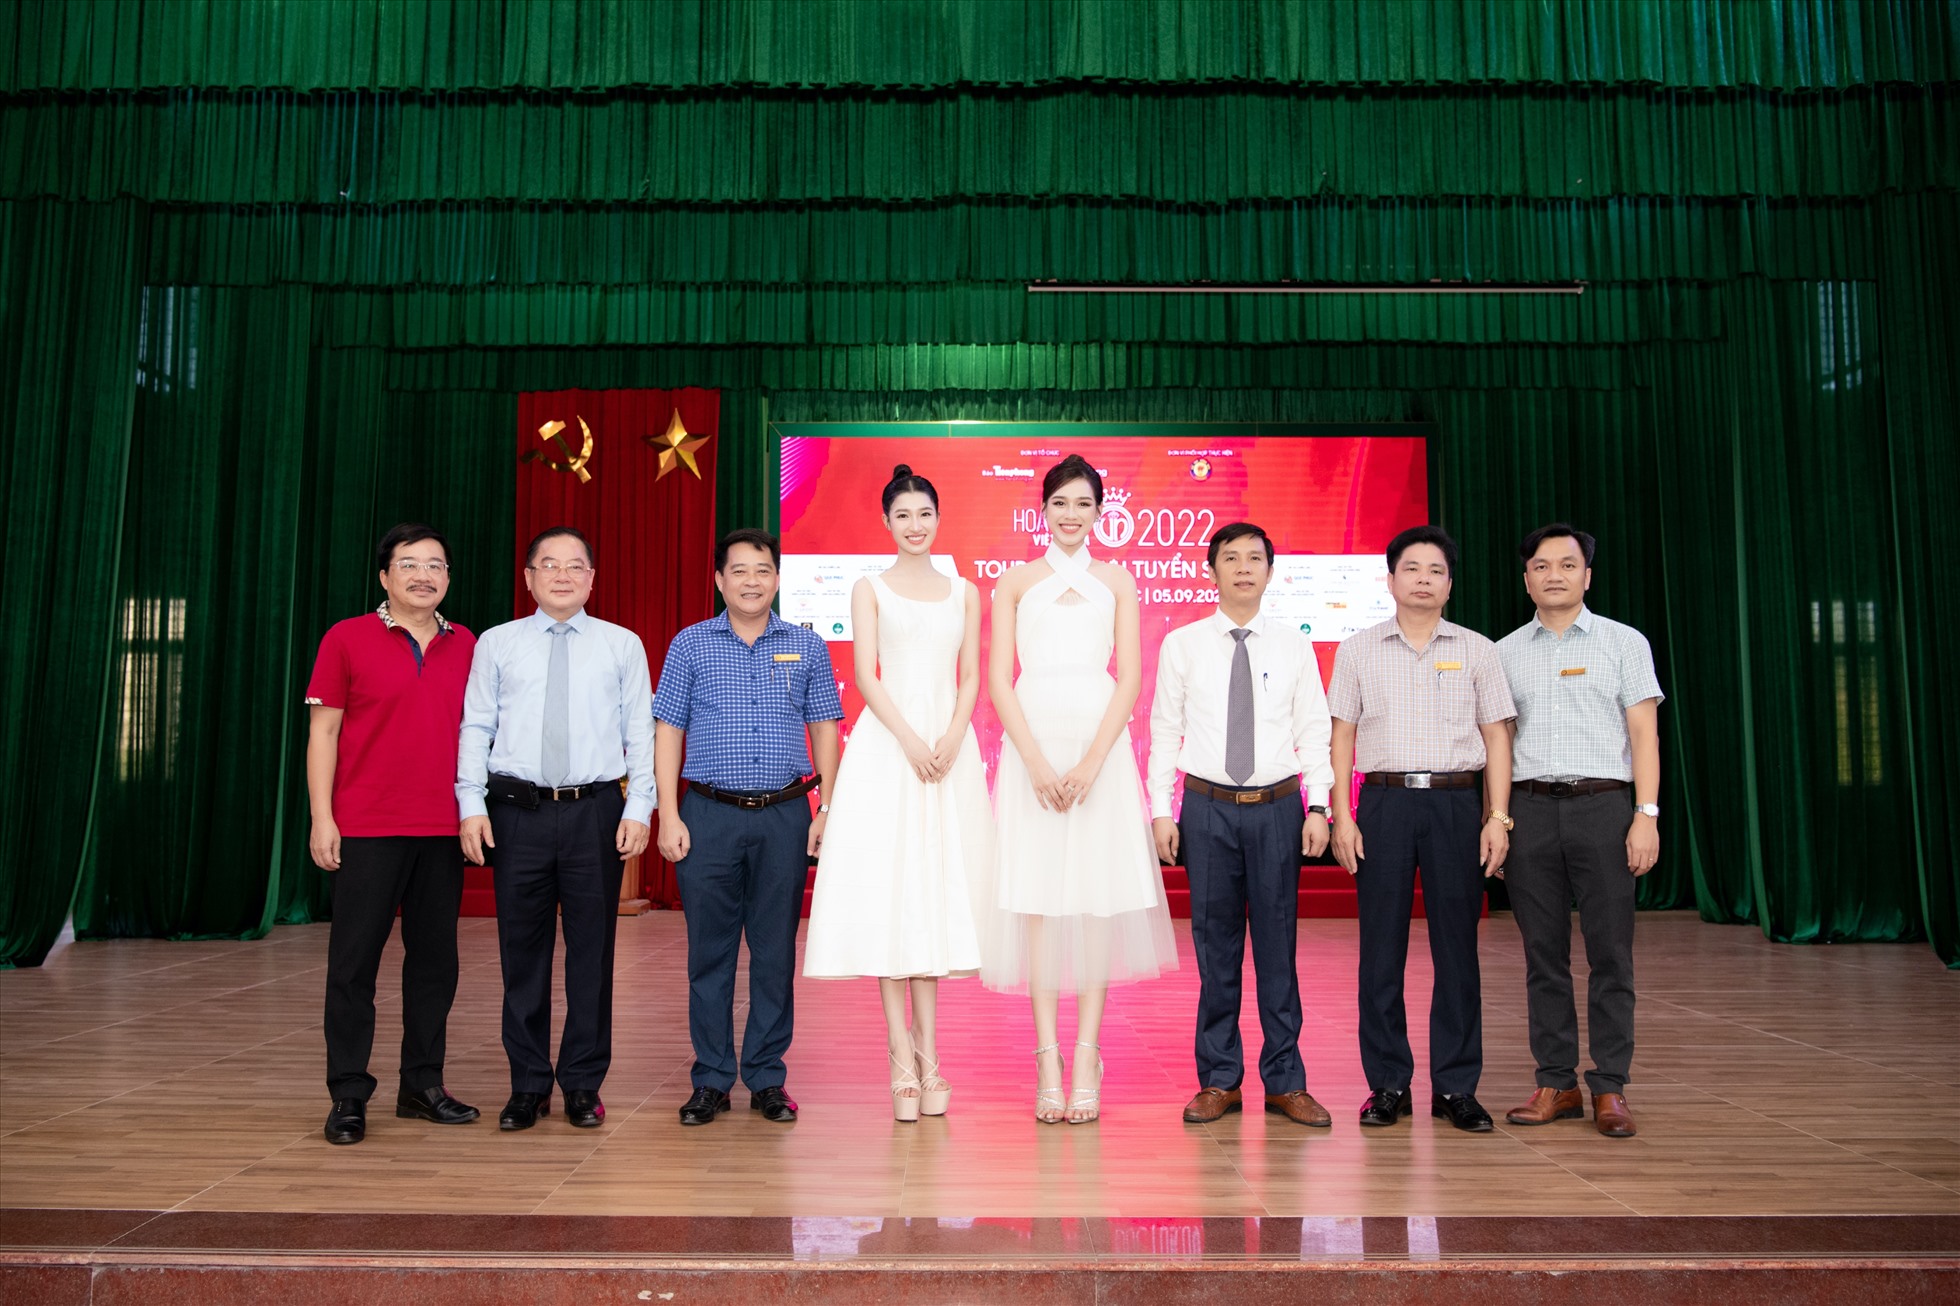 Các hoạt động, dự án nhân ái của “Hoa hậu Việt Nam” luôn được cộng đồng đánh giá cao về mặt đầu tư, mang đến giá trị thiết thực. Ảnh: NSCC.